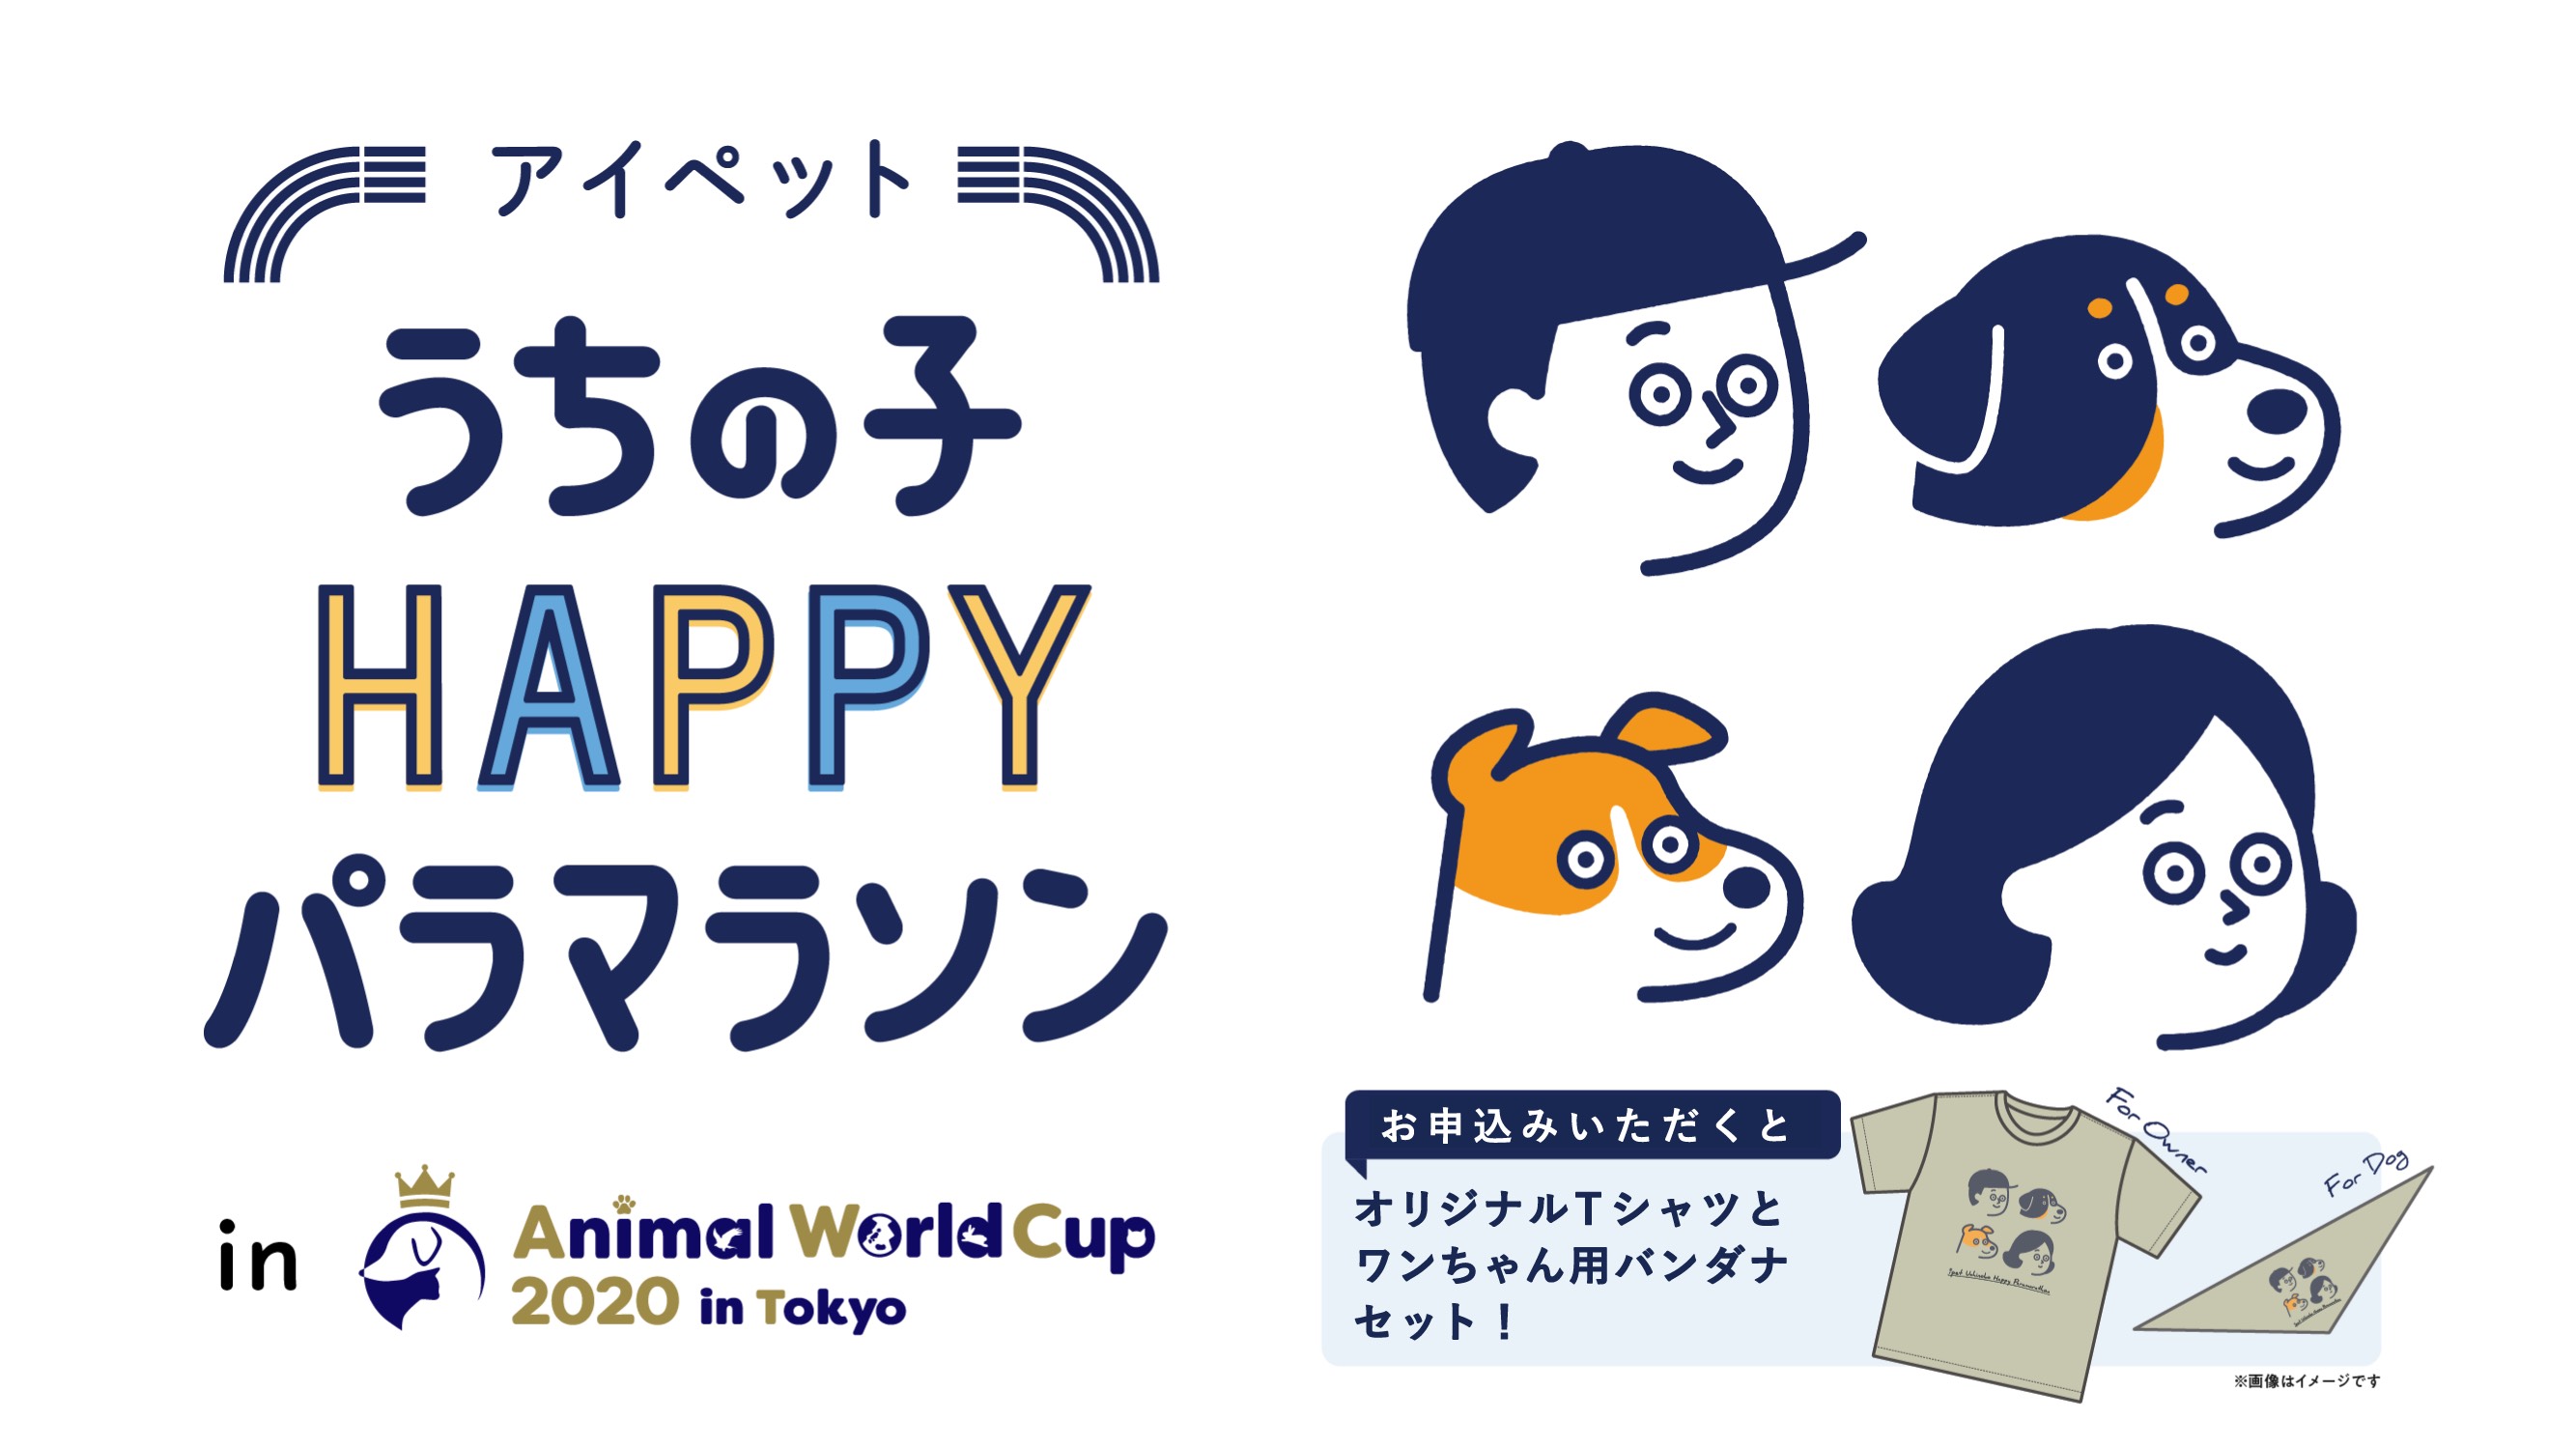 うちの子HAPPYパラマラソン in Animal World Cup 2020 in Tokyo